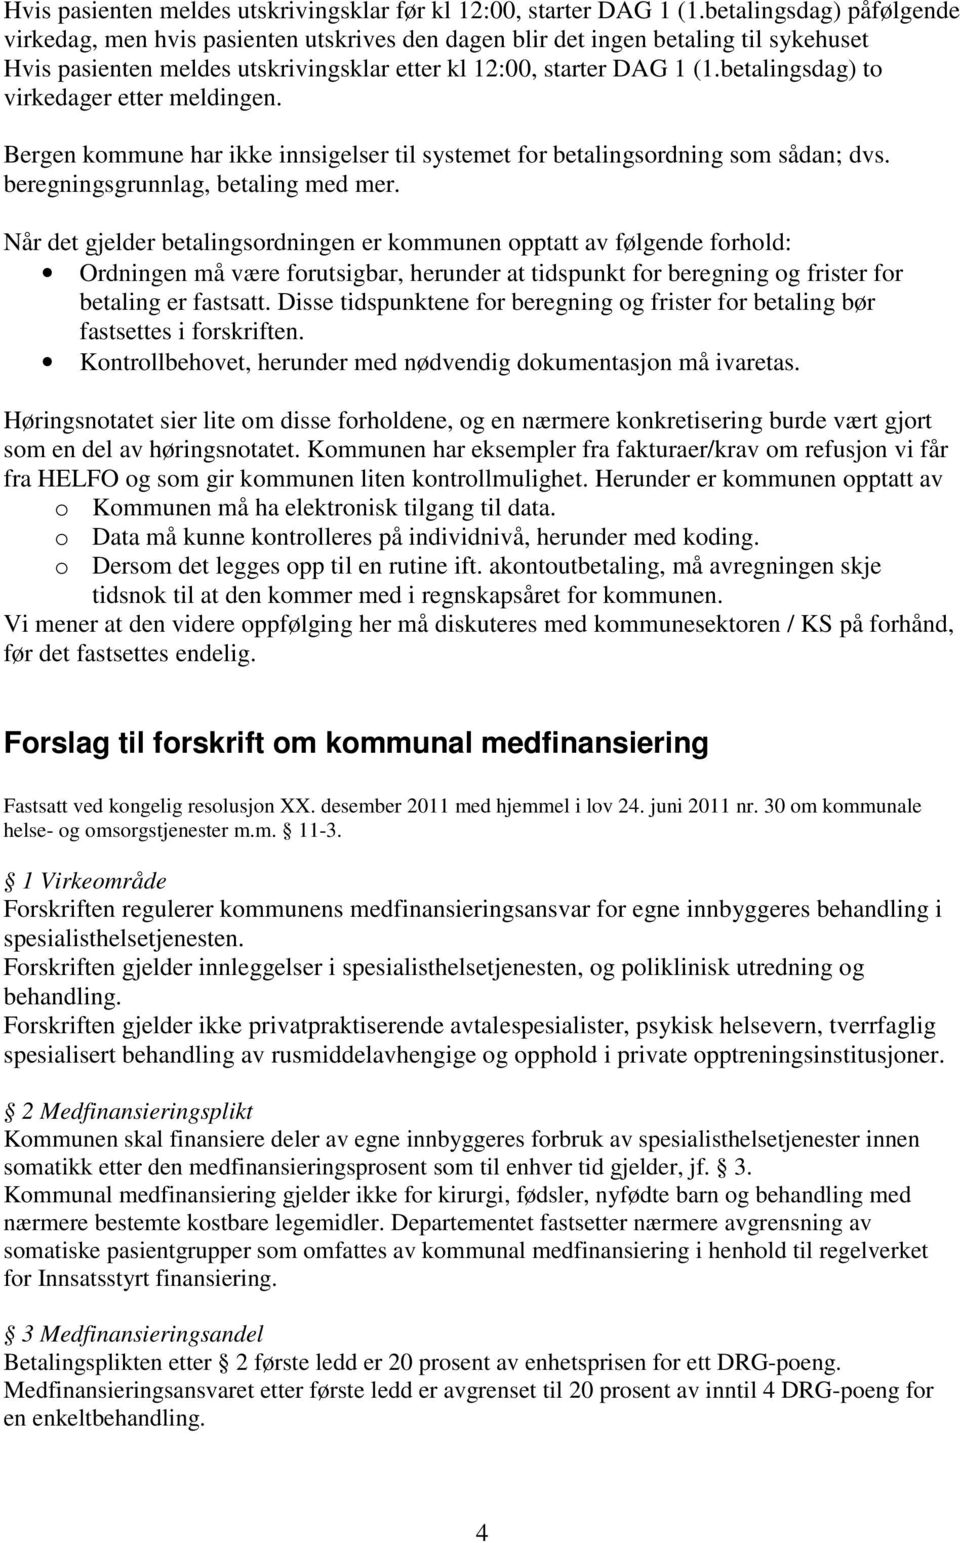 betalingsdag) to virkedager etter meldingen. Bergen kommune har ikke innsigelser til systemet for betalingsordning som sådan; dvs. beregningsgrunnlag, betaling med mer.